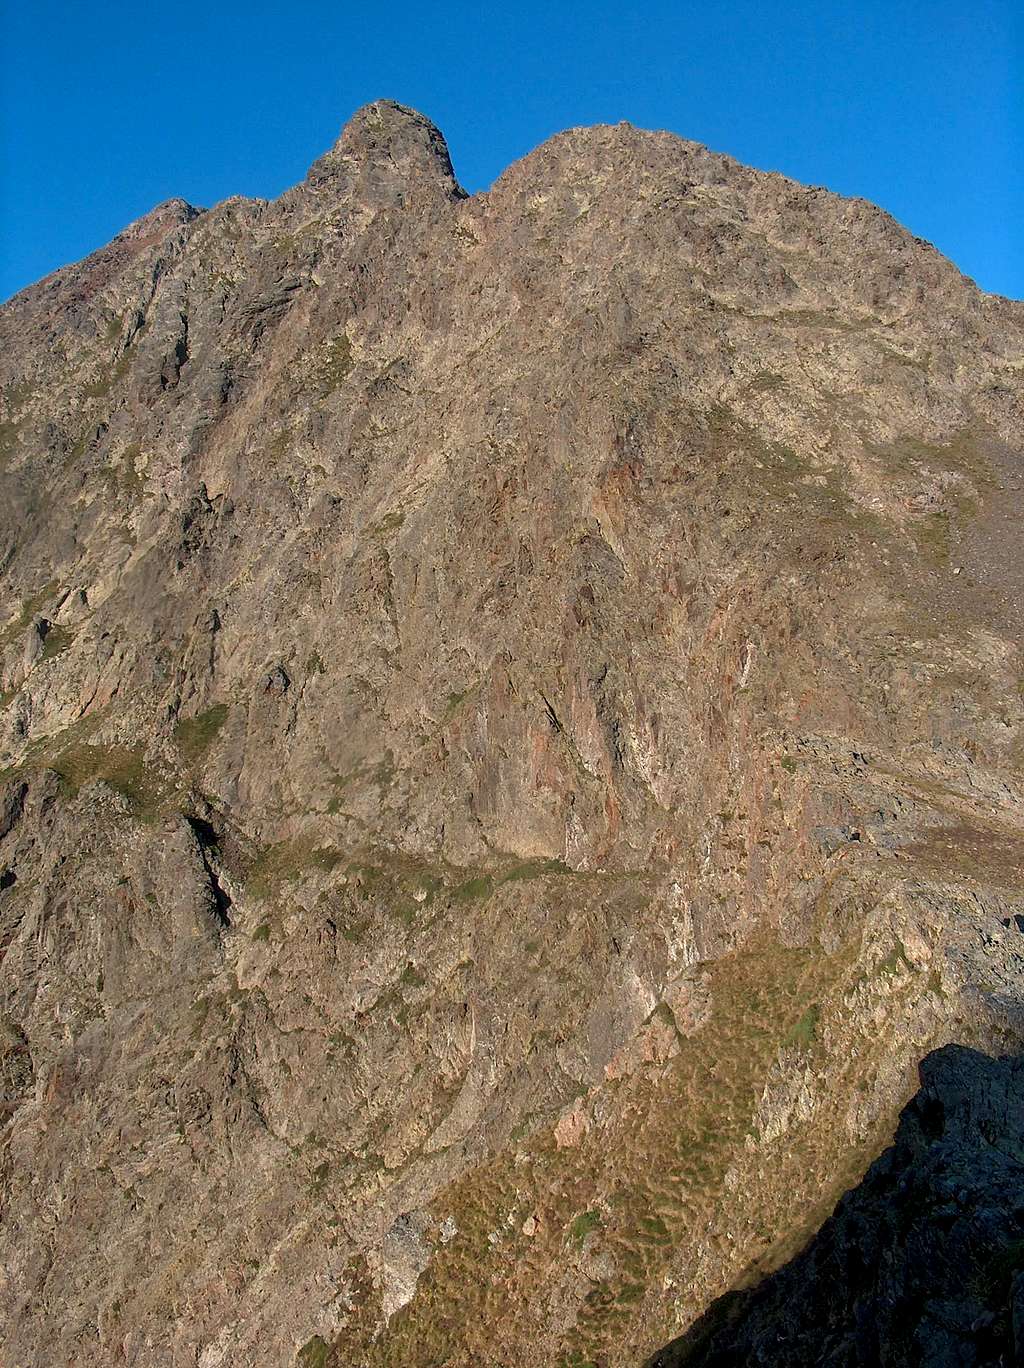 The Parraouis (Lustou N ridge) seen while ascending Pic d'Estos